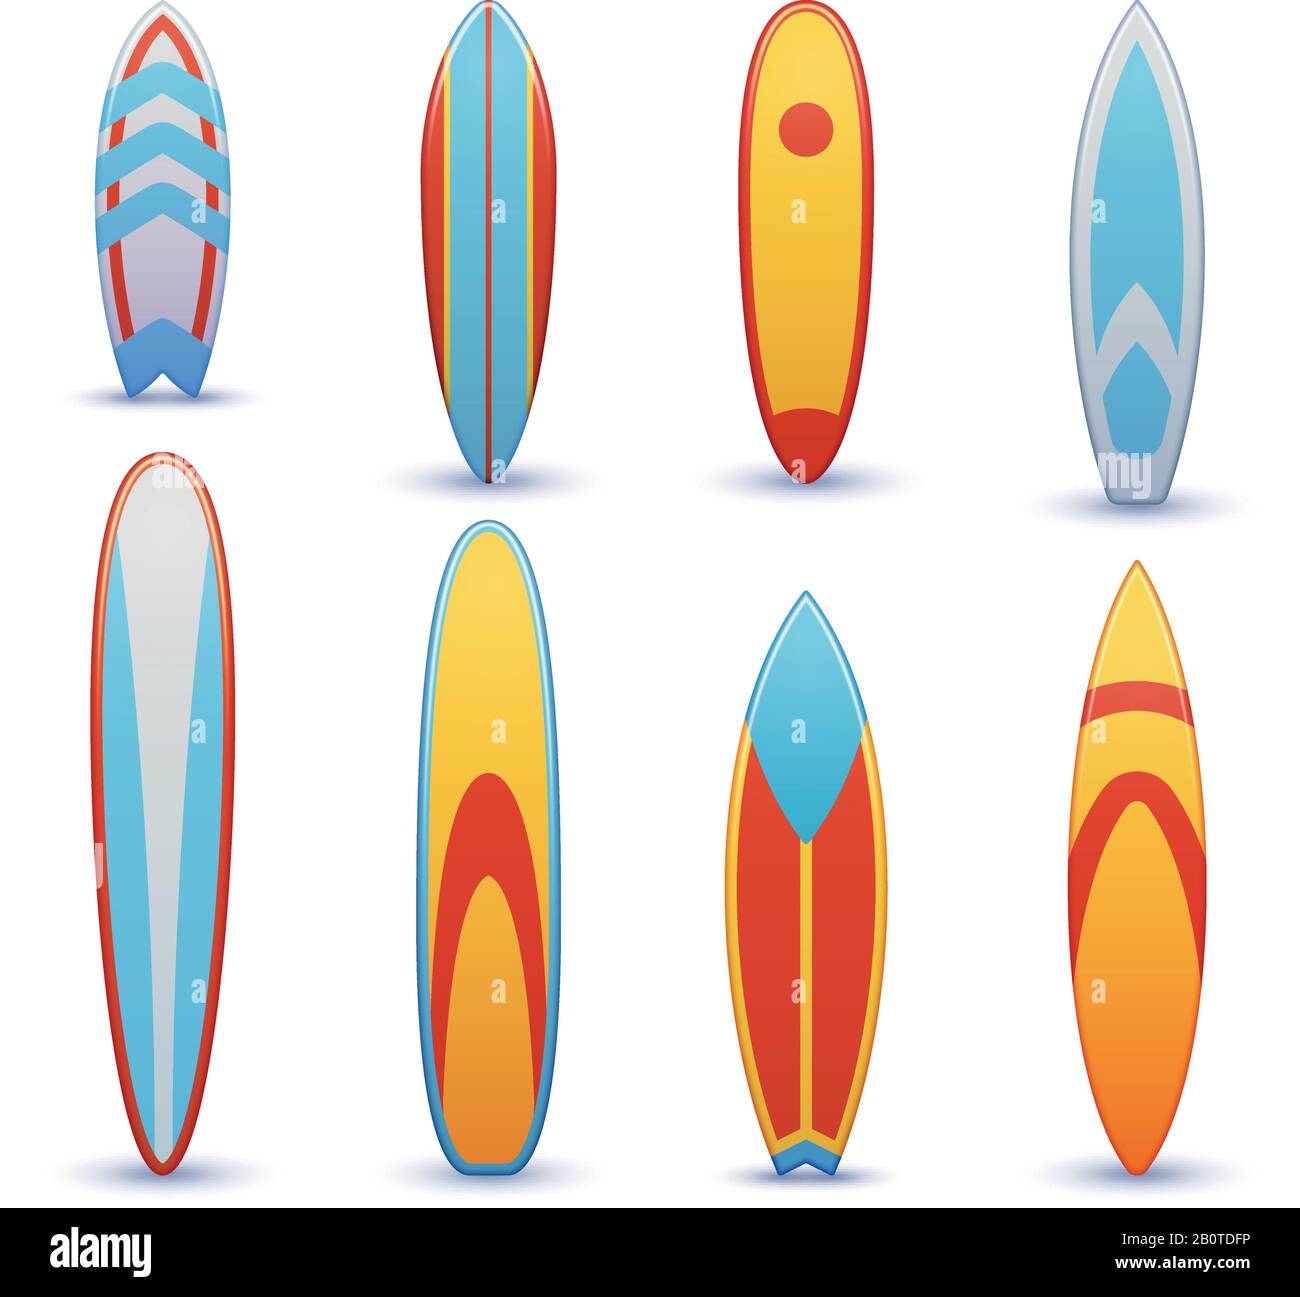 Tavole da surf vintage con set di vettori di design grafico cool. Surf shortboard, illustrazione di funboard per surf Illustrazione Vettoriale